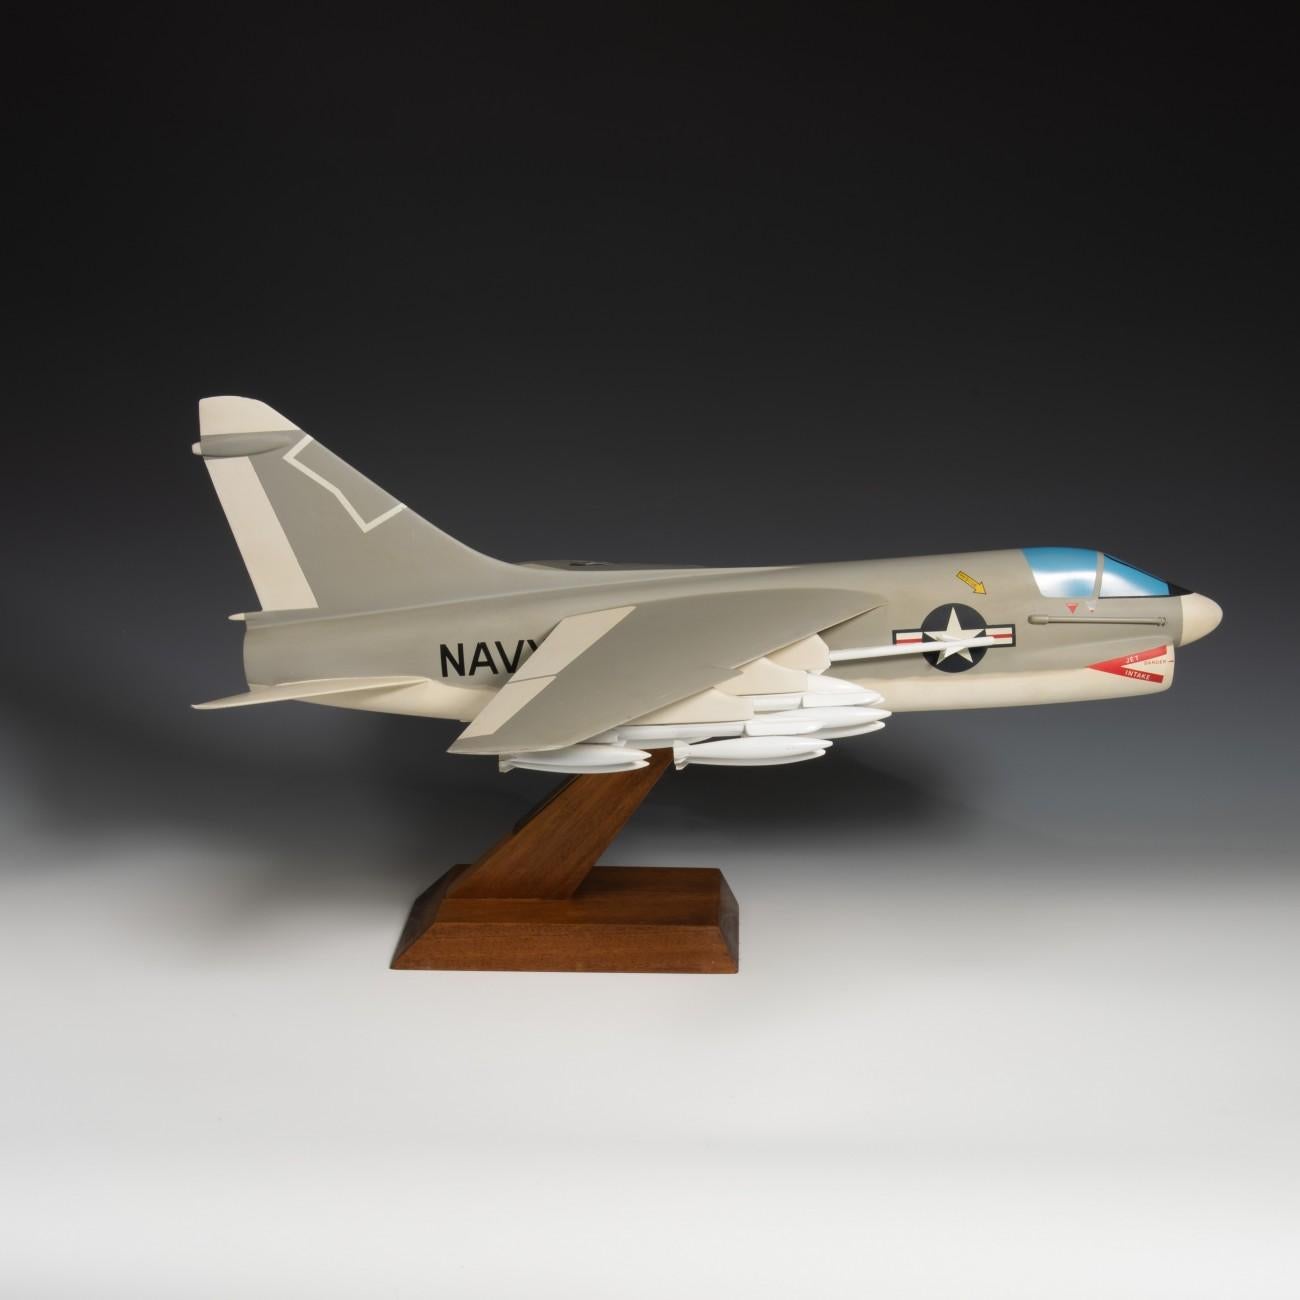 Ein außergewöhnliches, lackiertes Aluminium- und Holzmodell des LTV (Ling-Temco-Vought) A-7 Corsair II Kampfflugzeugs. In der Lackierung der United States Navy (USN). Hergestellt von einem berühmten niederländischen Modellbauer, Maarten Matthijs